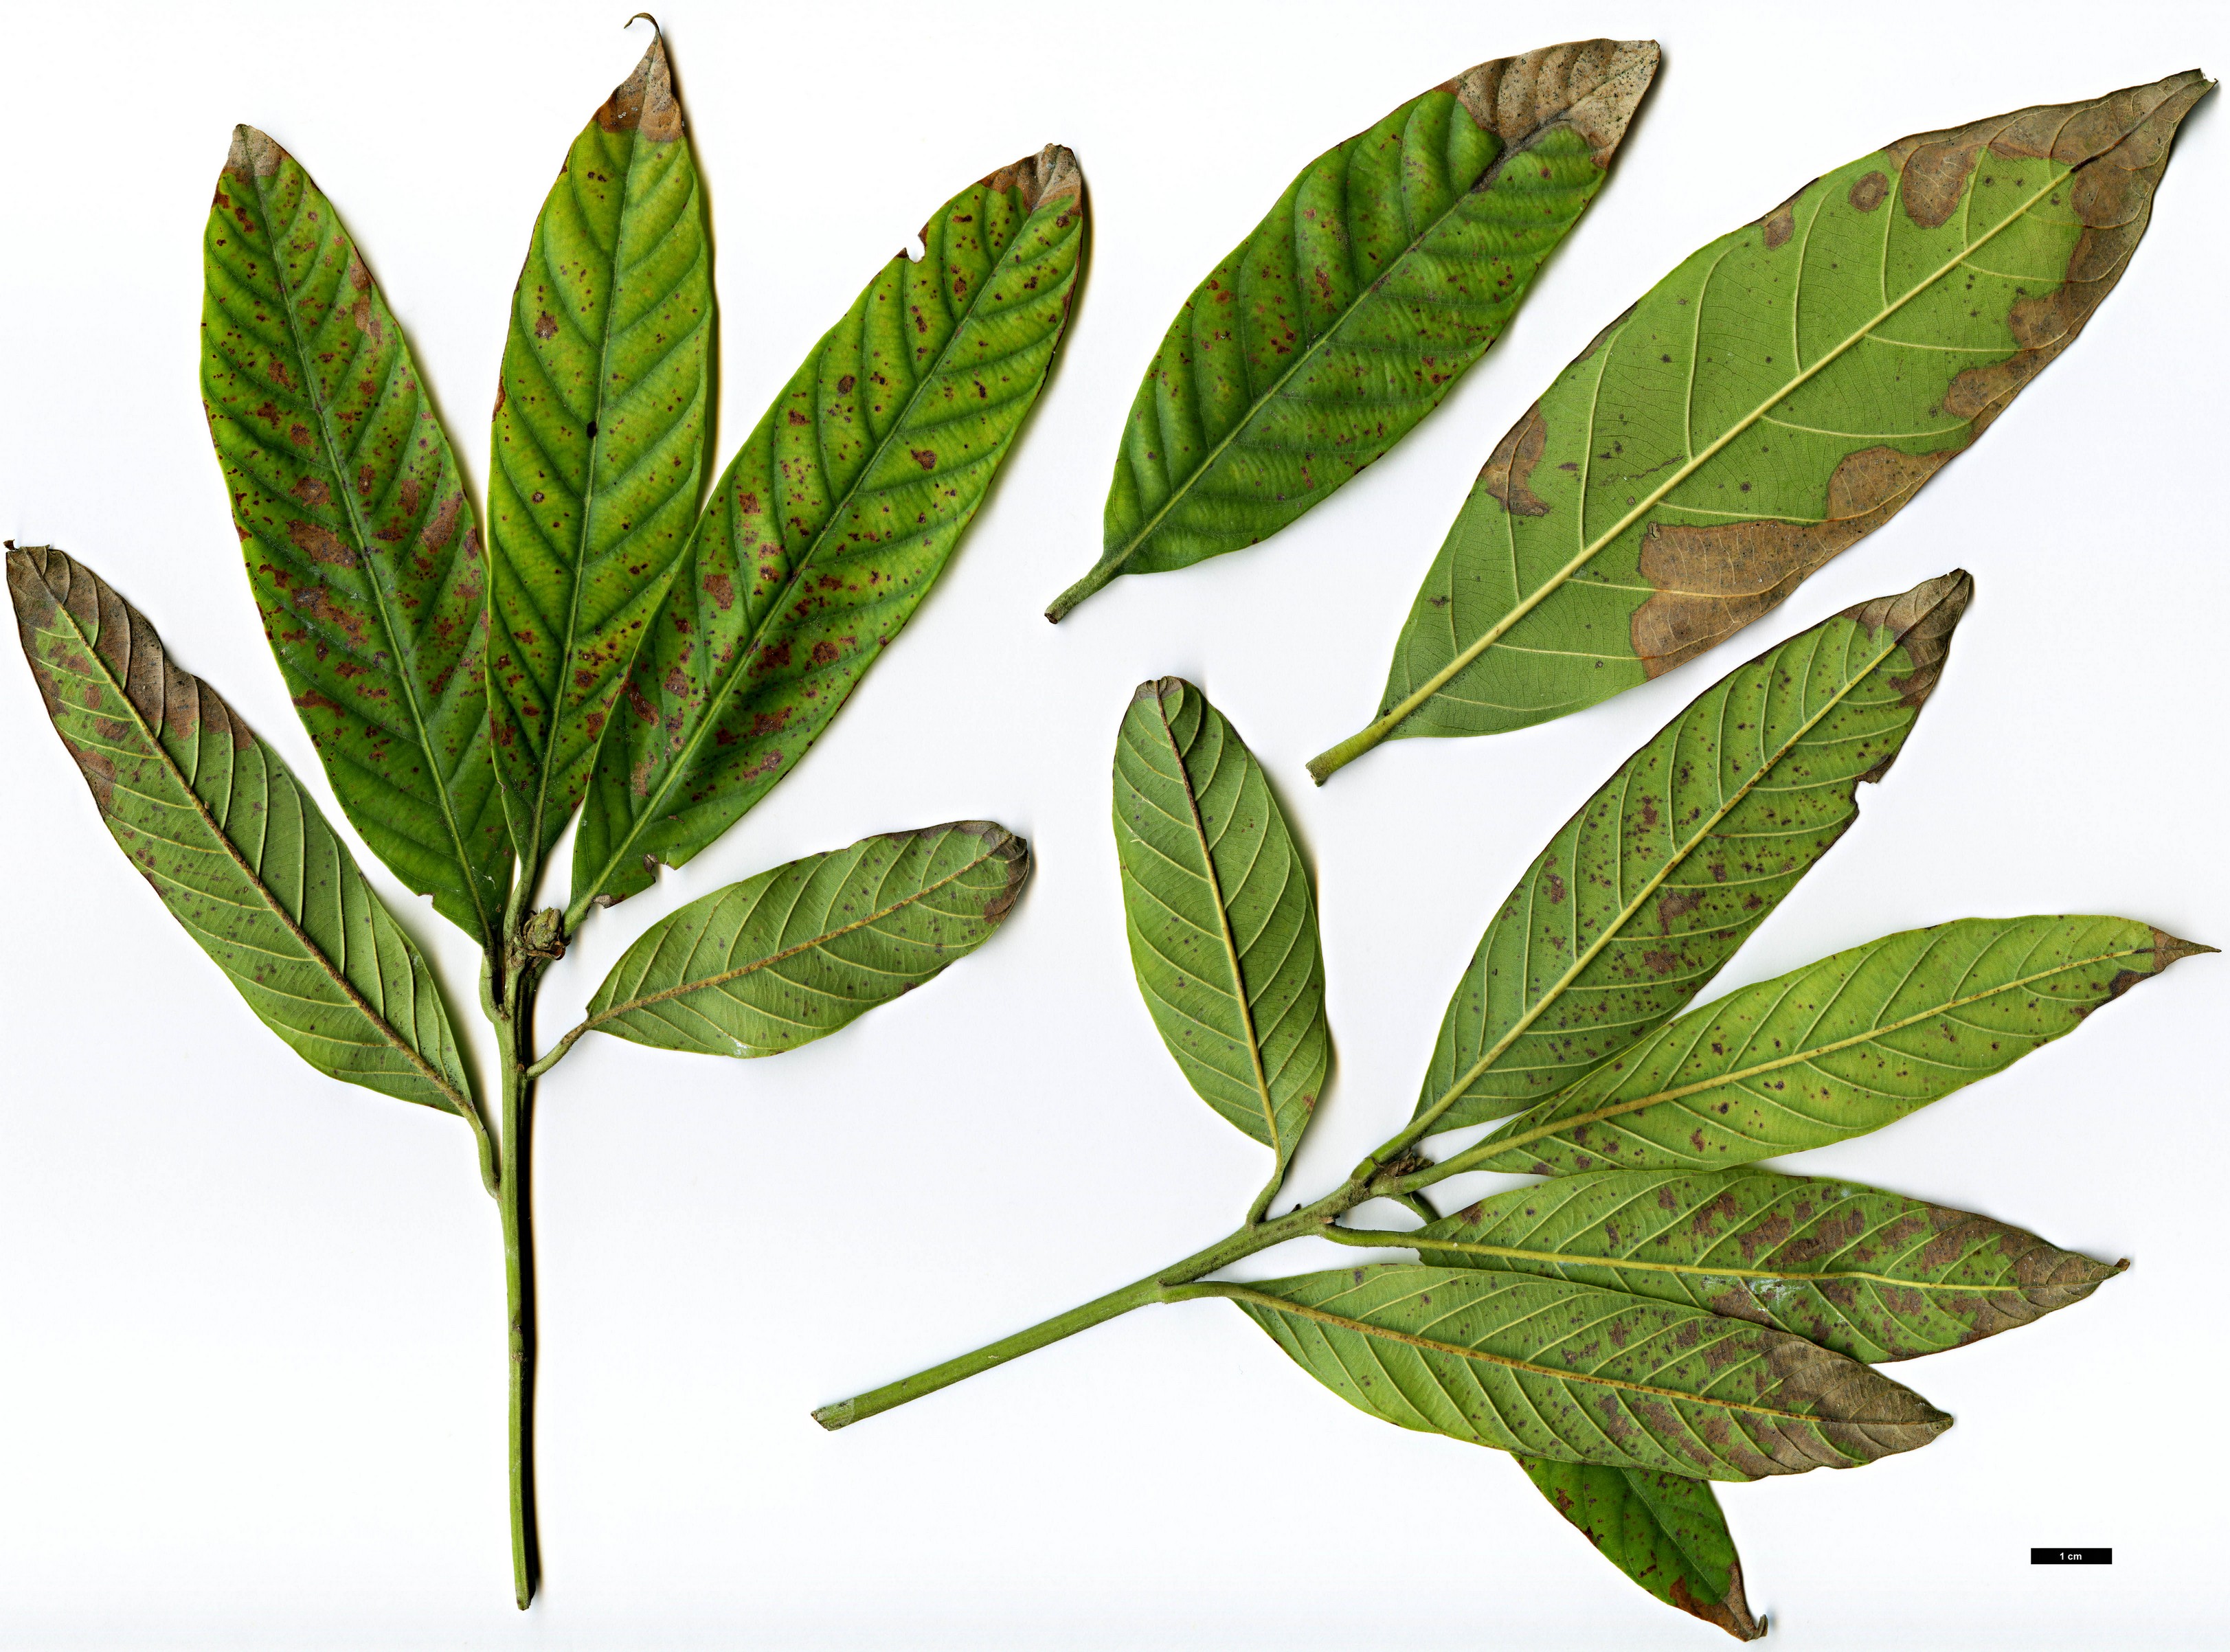 High resolution image: Family: Fagaceae - Genus: Lithocarpus - Taxon: lepidocarpus